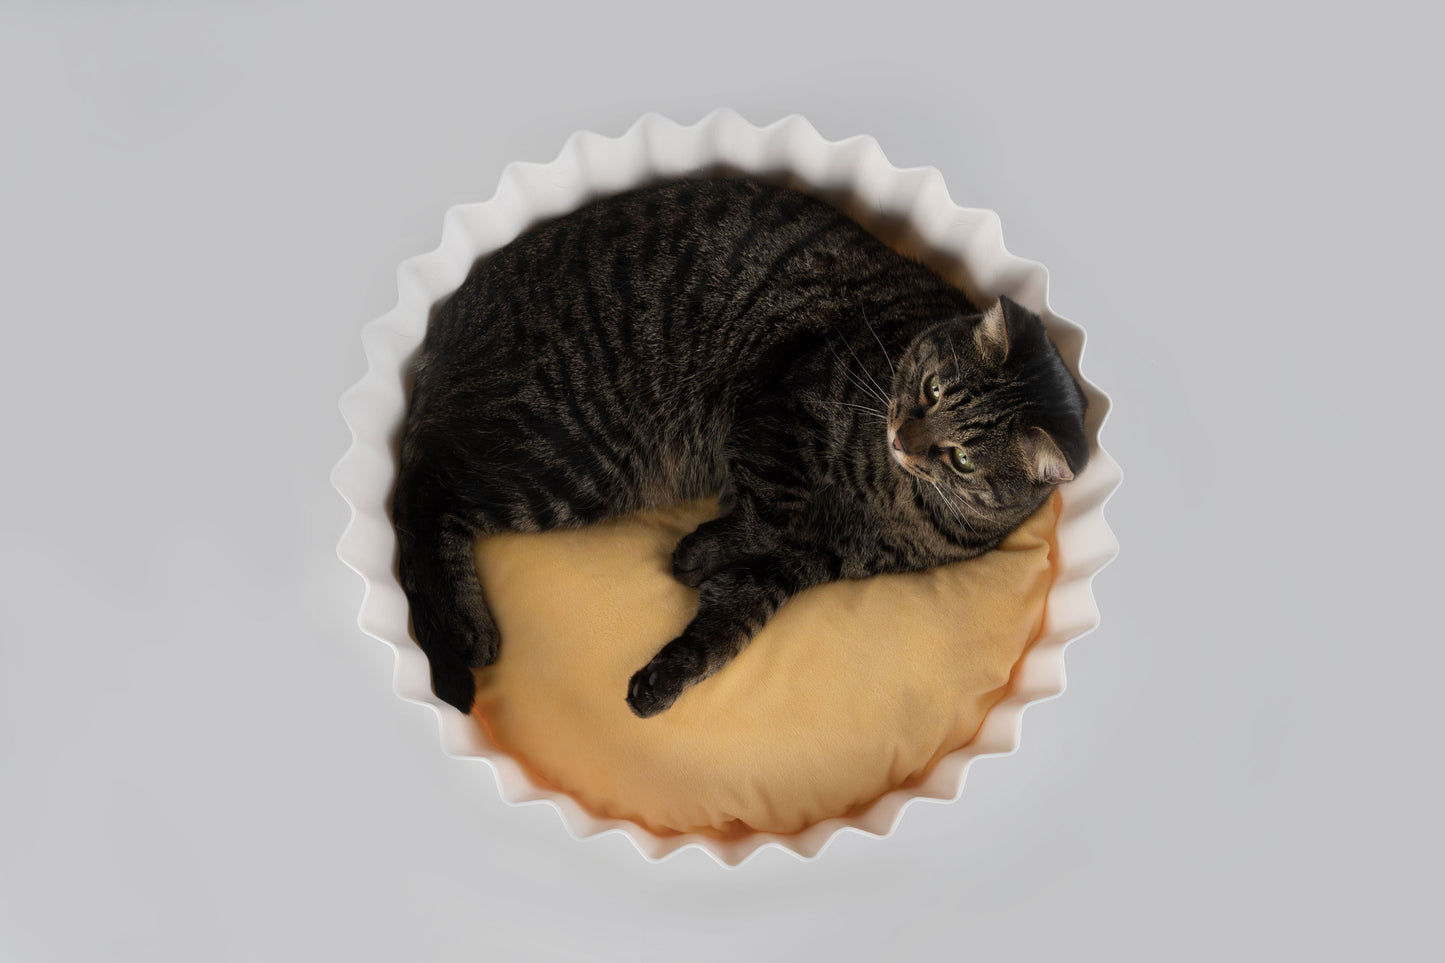 Cupcake cat bed